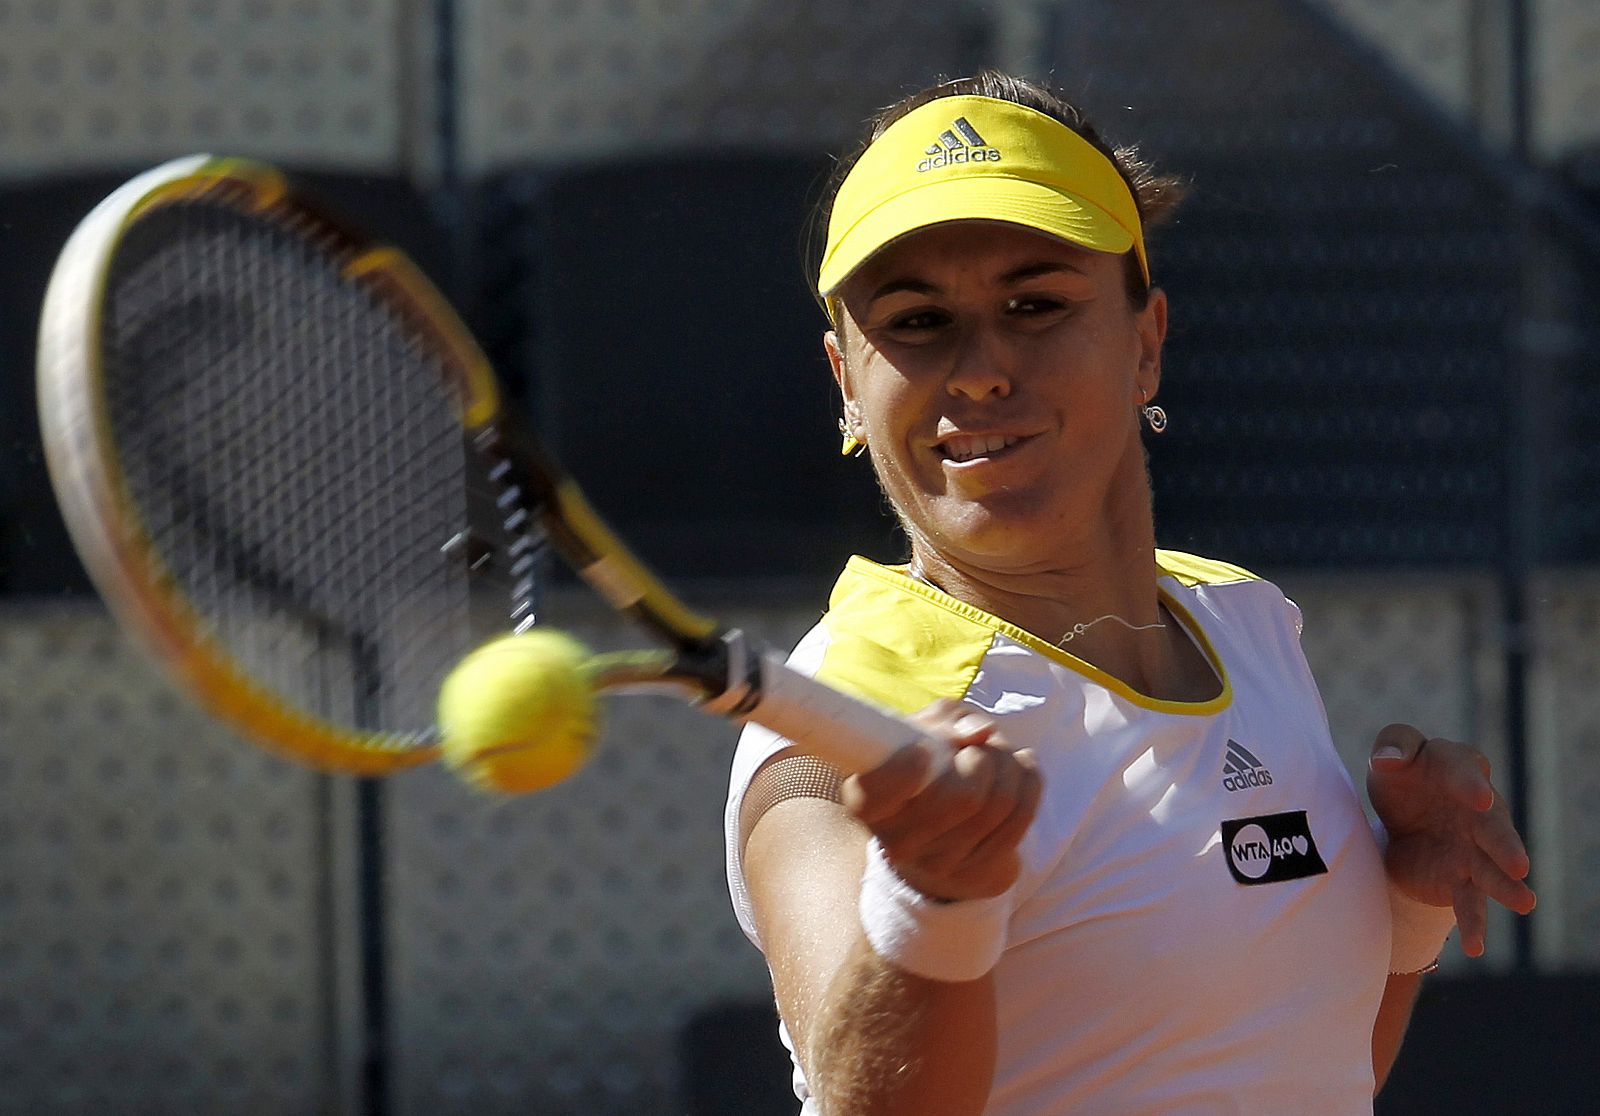 La española Anabel Medina, invitada de la organización, jugando en el Abierto de Madrid de tenis